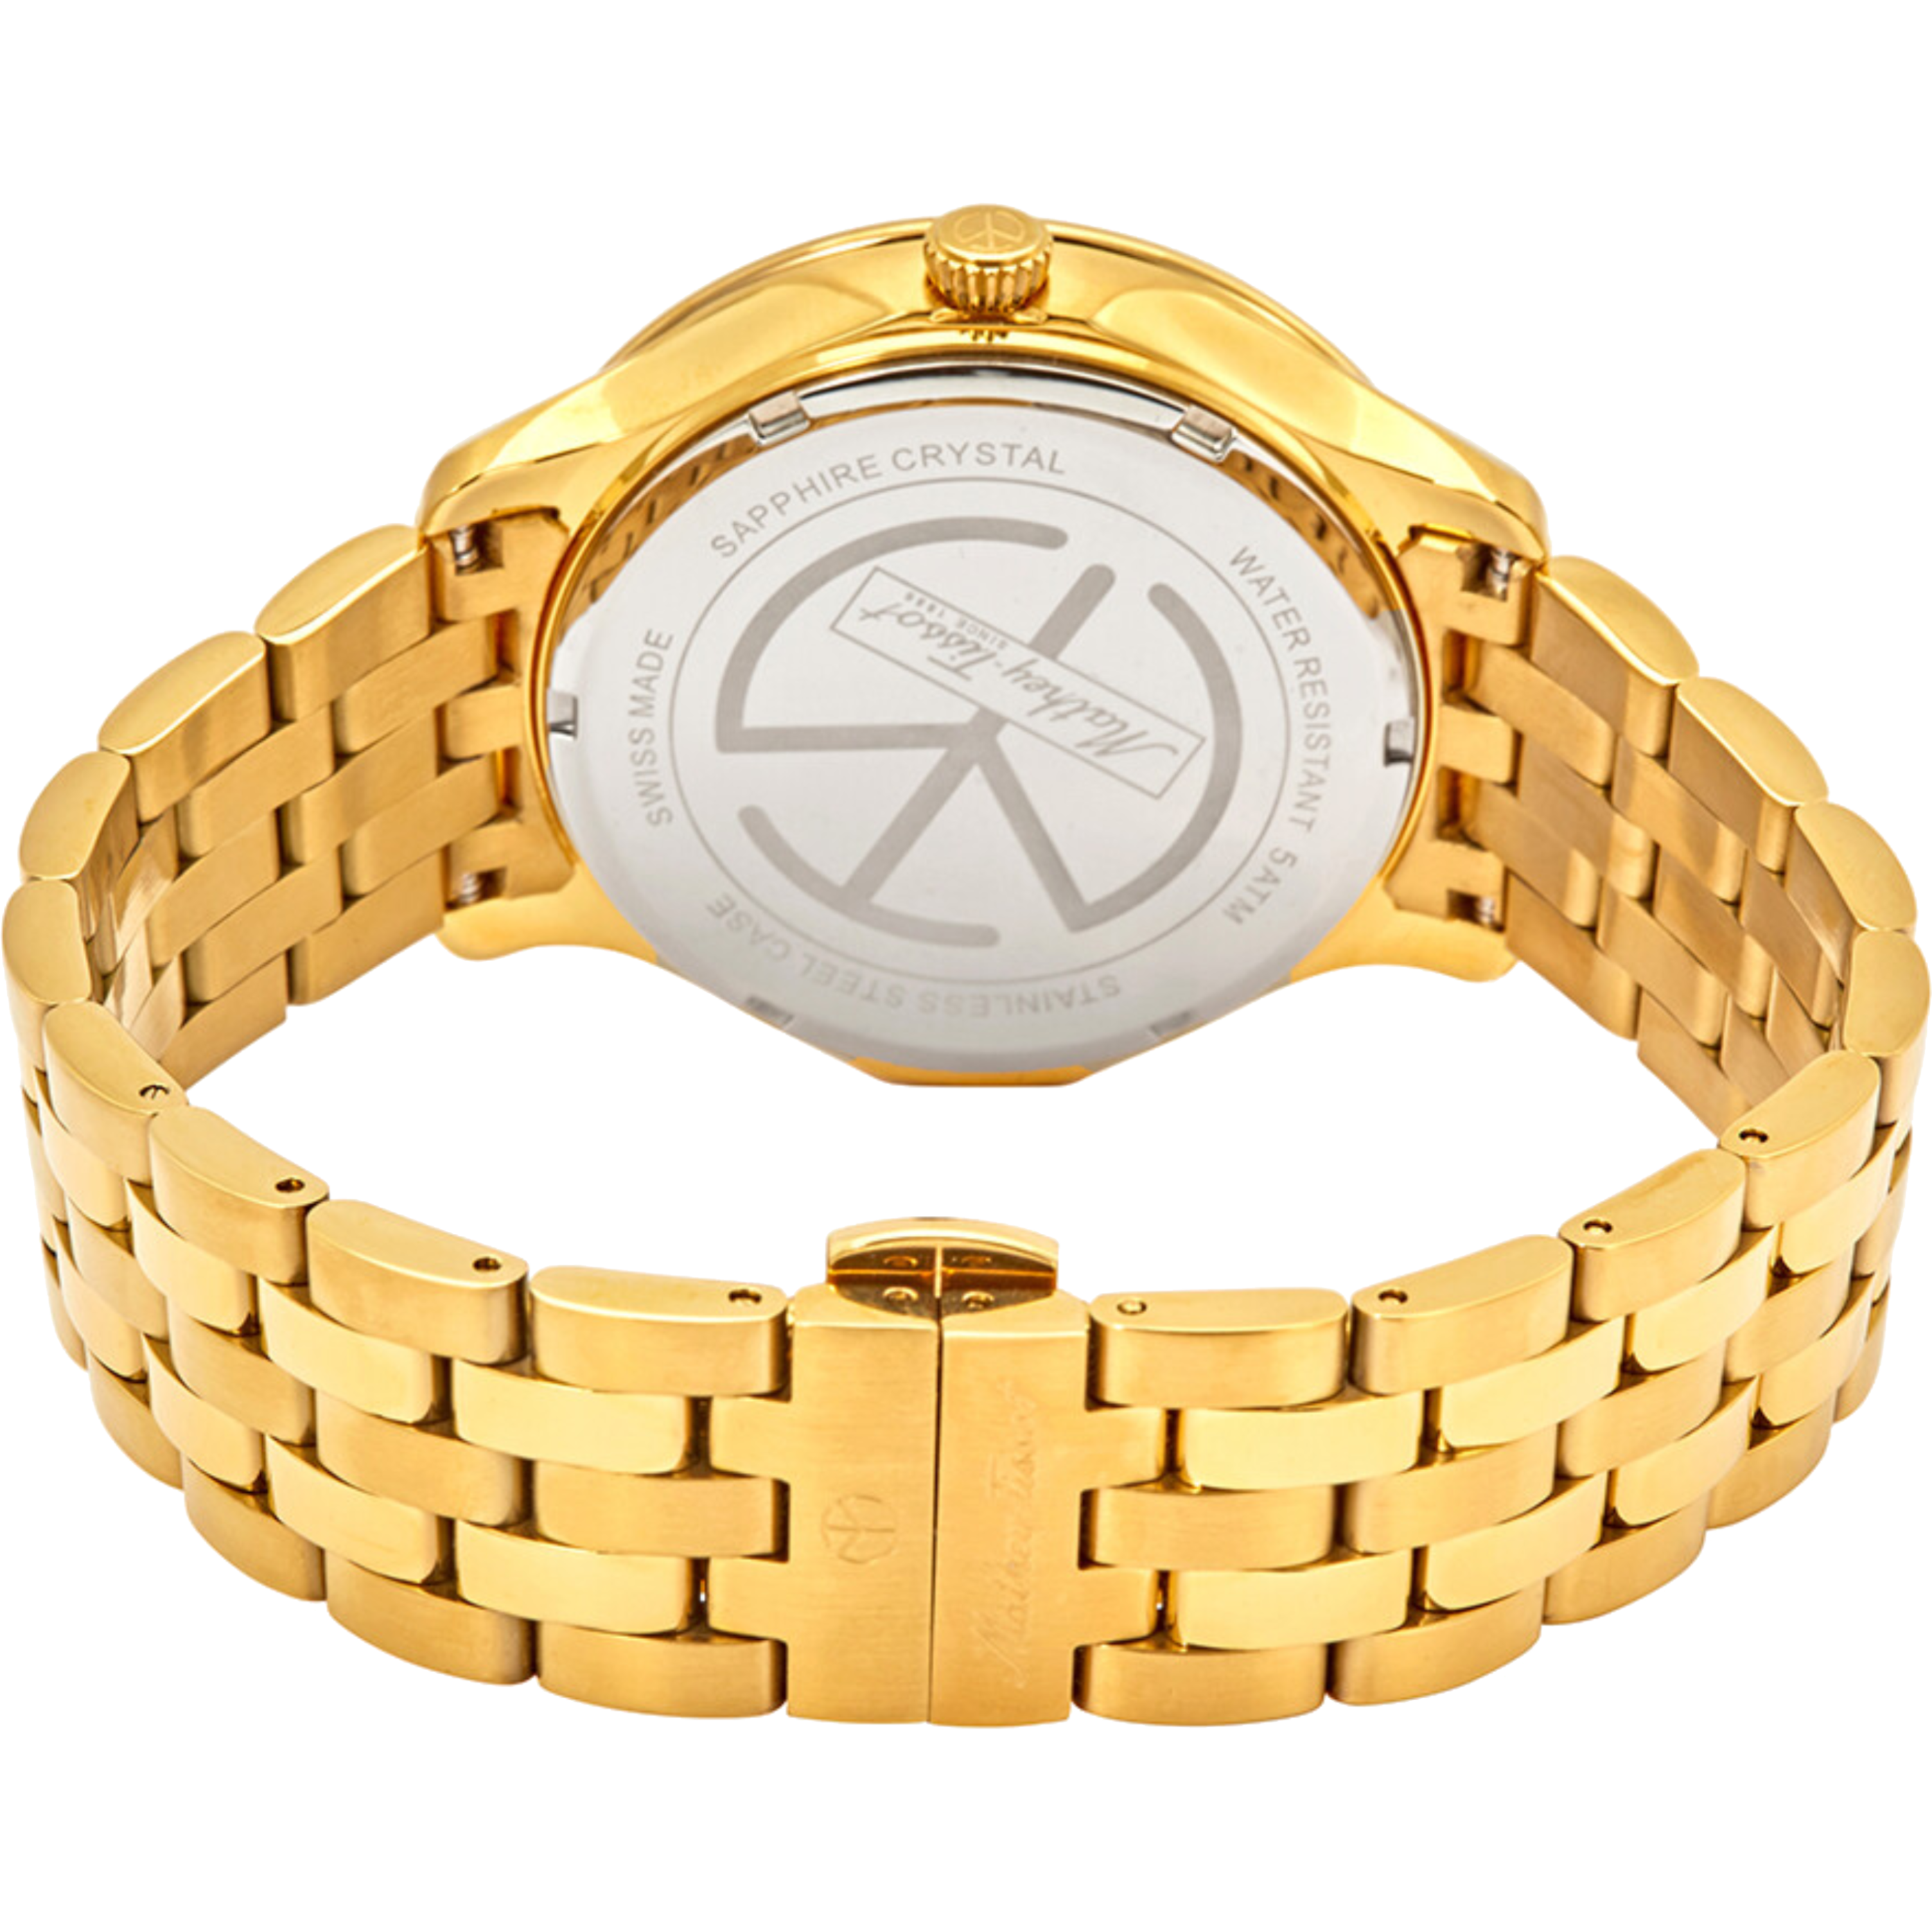 שעון יד לגבר Mathey Tissot H1886MPI 42mm צבע זהב/זכוכית ספיר - אחריות לשנתיים